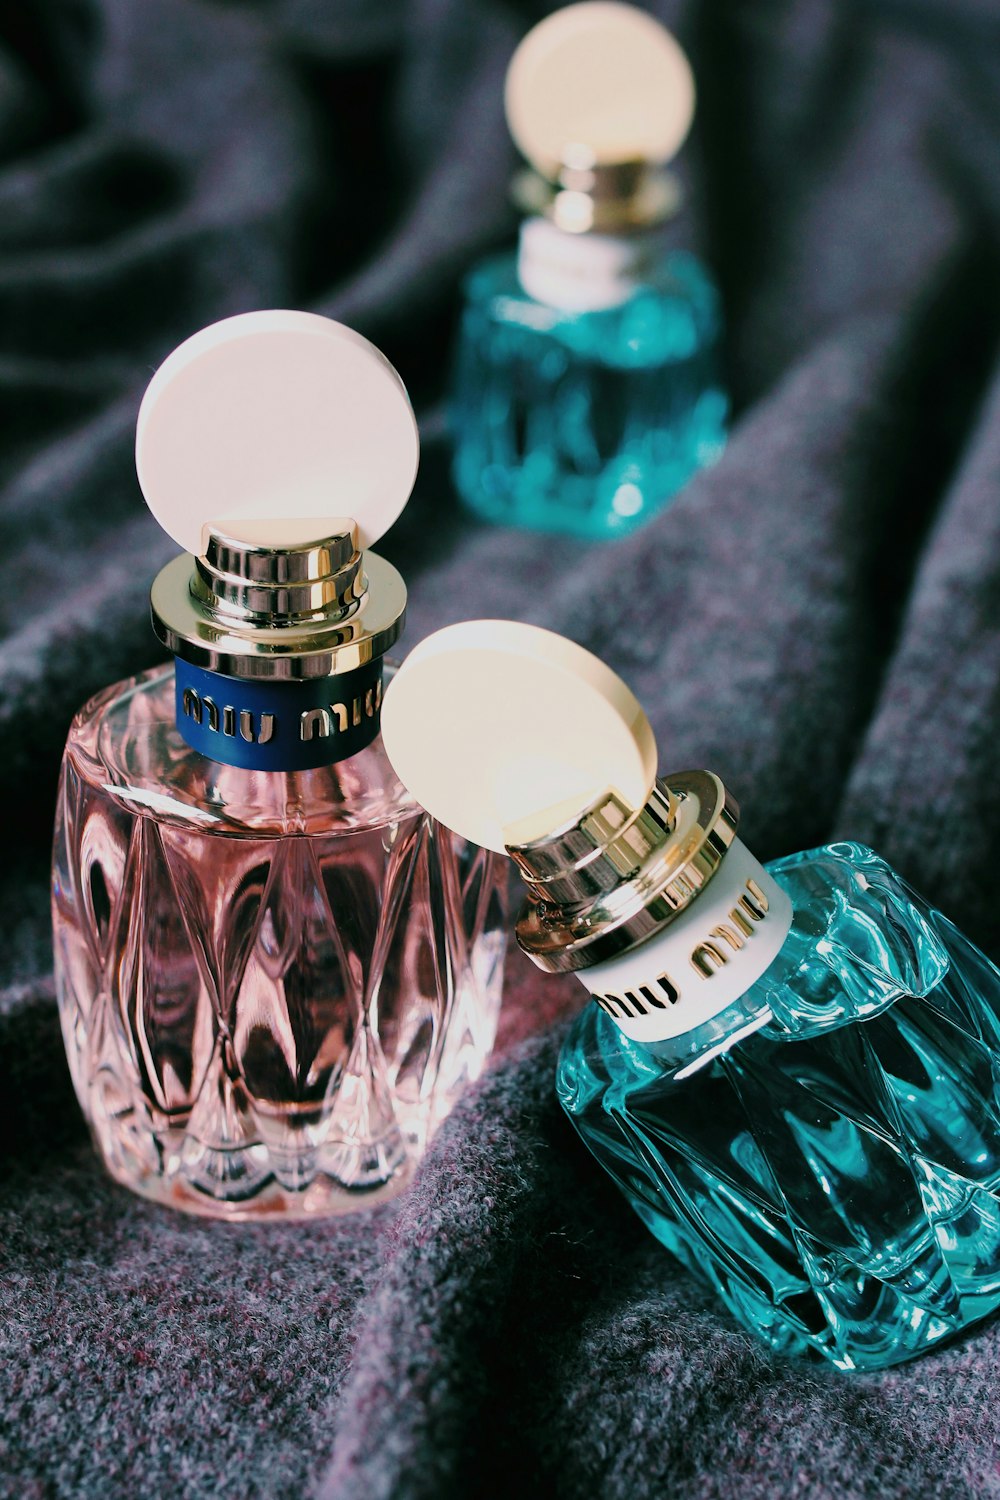 Más de 100 imágenes de perfumes | Descargar imágenes gratis en Unsplash